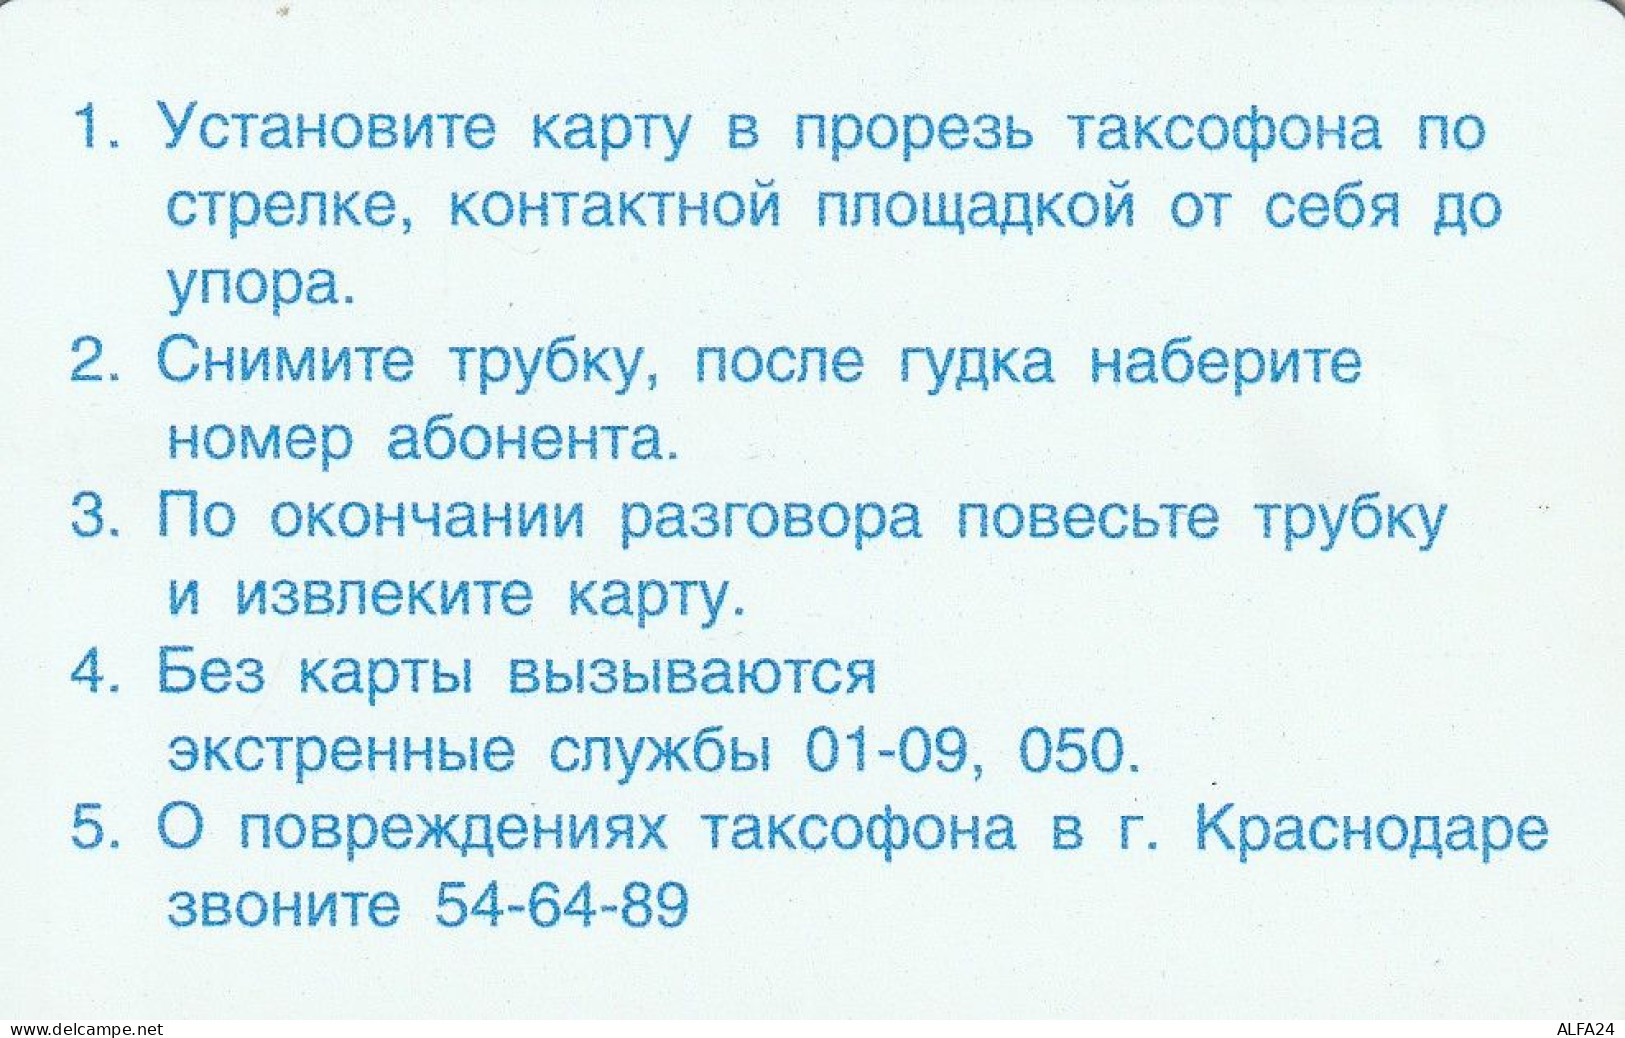 PHONE CARD RUSSIA Southern Telephone Company - Krasnodar (E9.13.5 - Russland